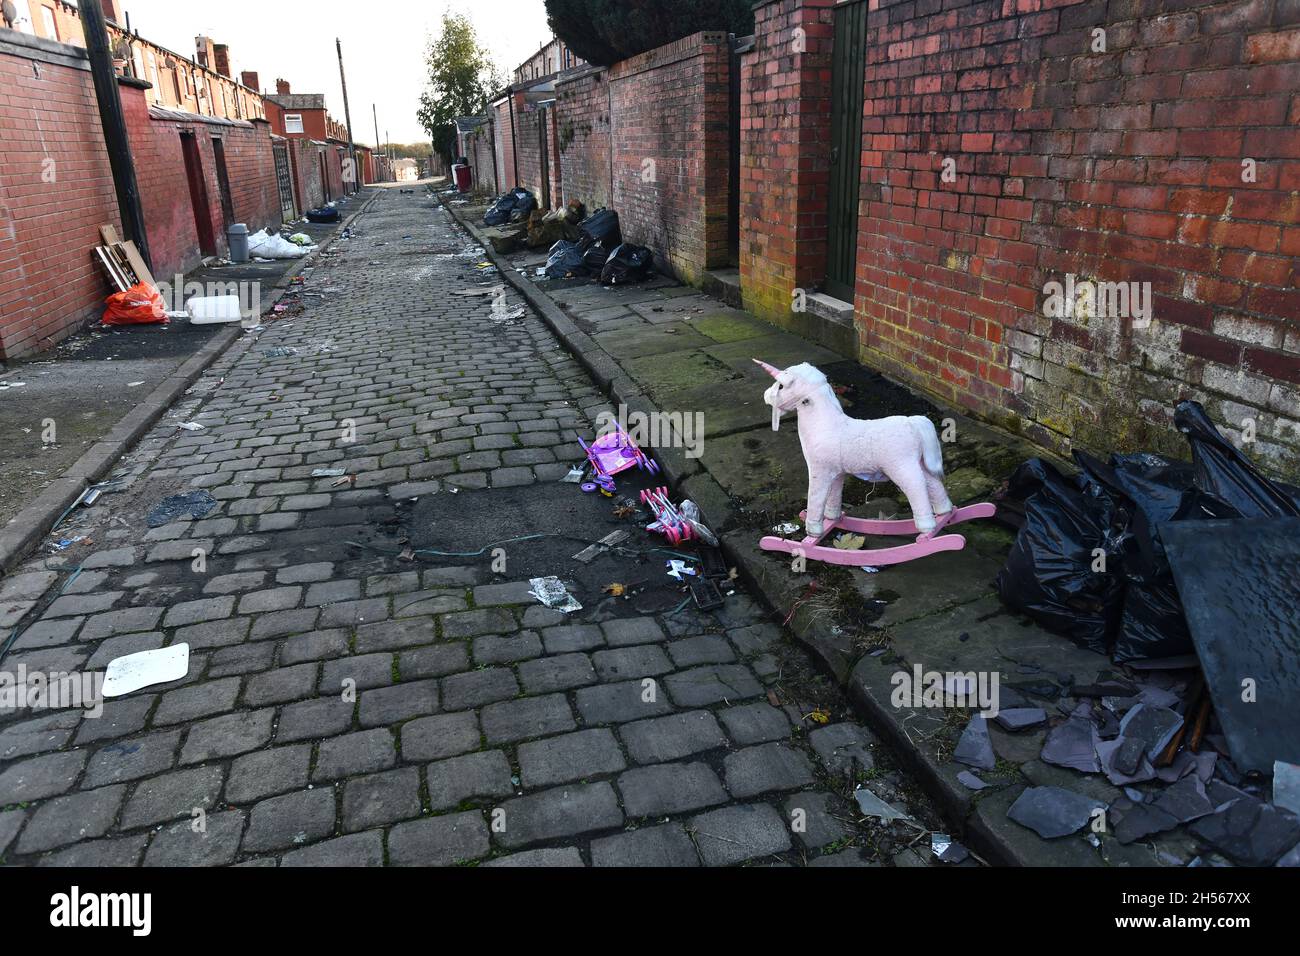 Maisons dos à dos avec rues pavées parsemées de déchets, Bolton, Lancashire Banque D'Images